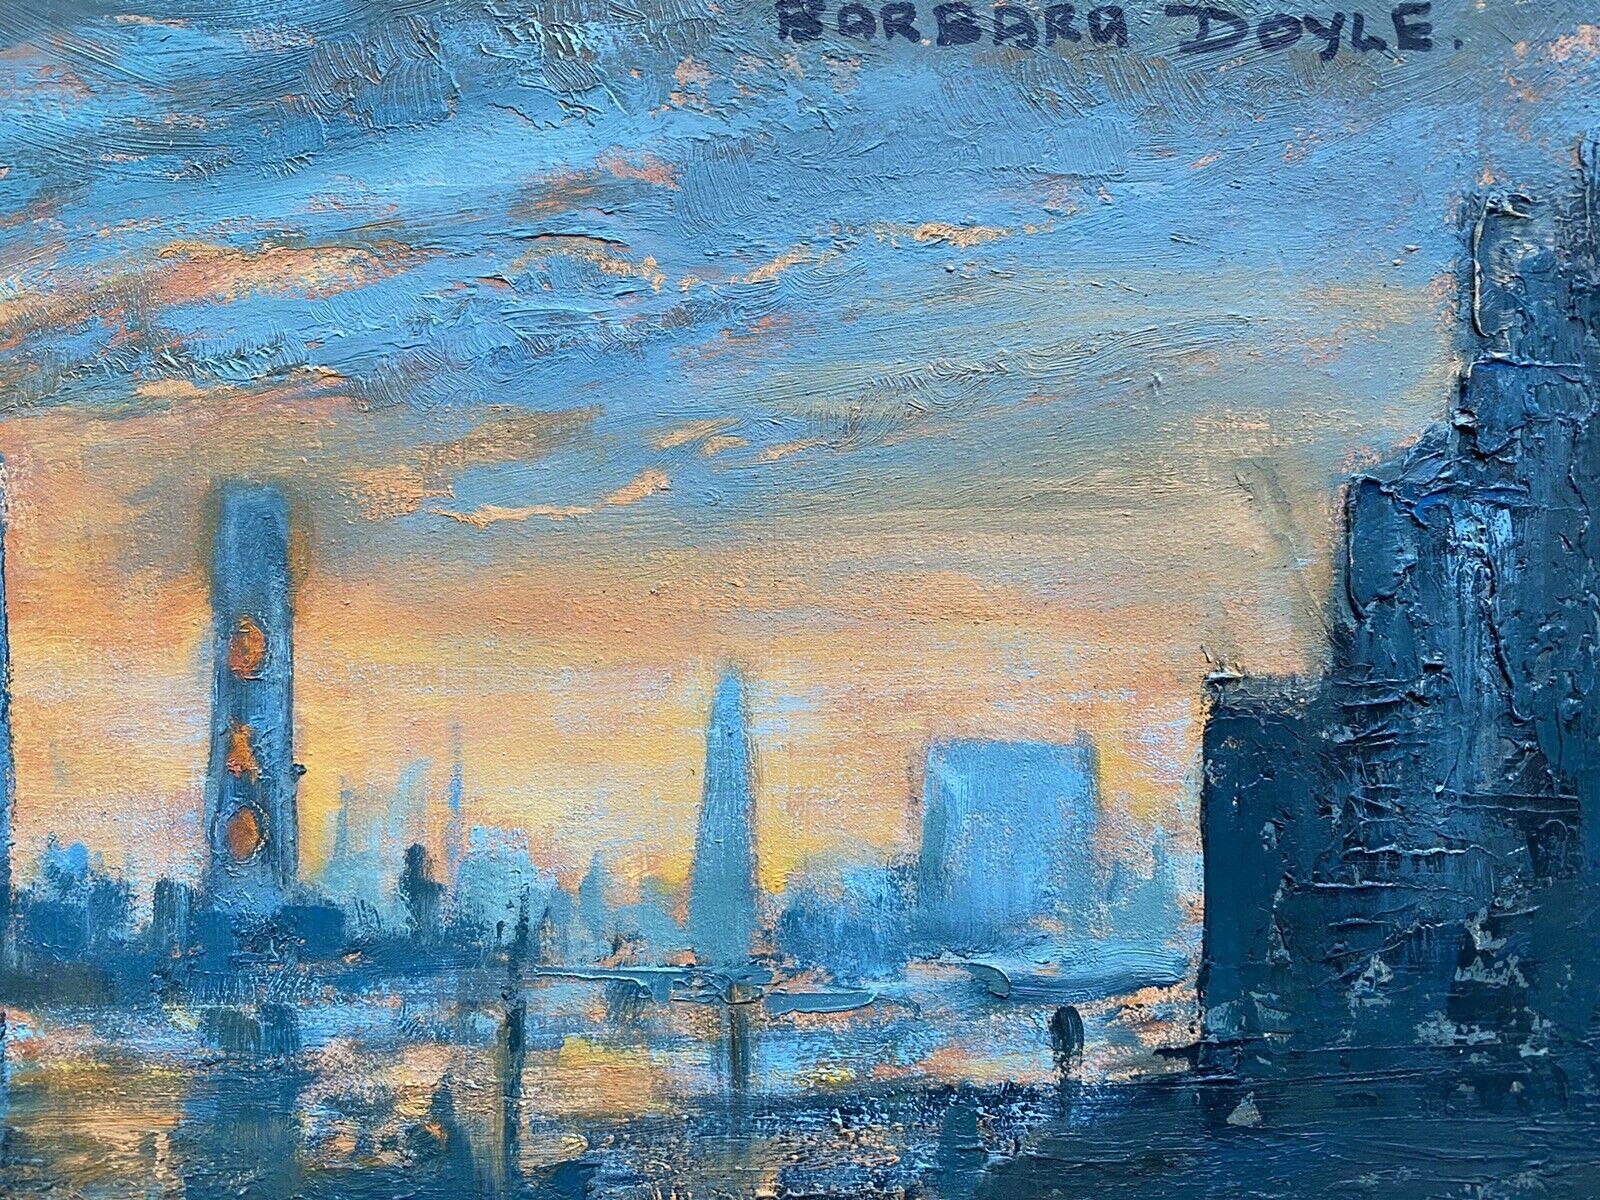 BARBARA DOYLE (GEB.1917) ORIGINAL MODERNES BRITISCHES ÖLGEMÄLDE - LONDON BRIDGE (Blau), Landscape Painting, von Barbera Doyle